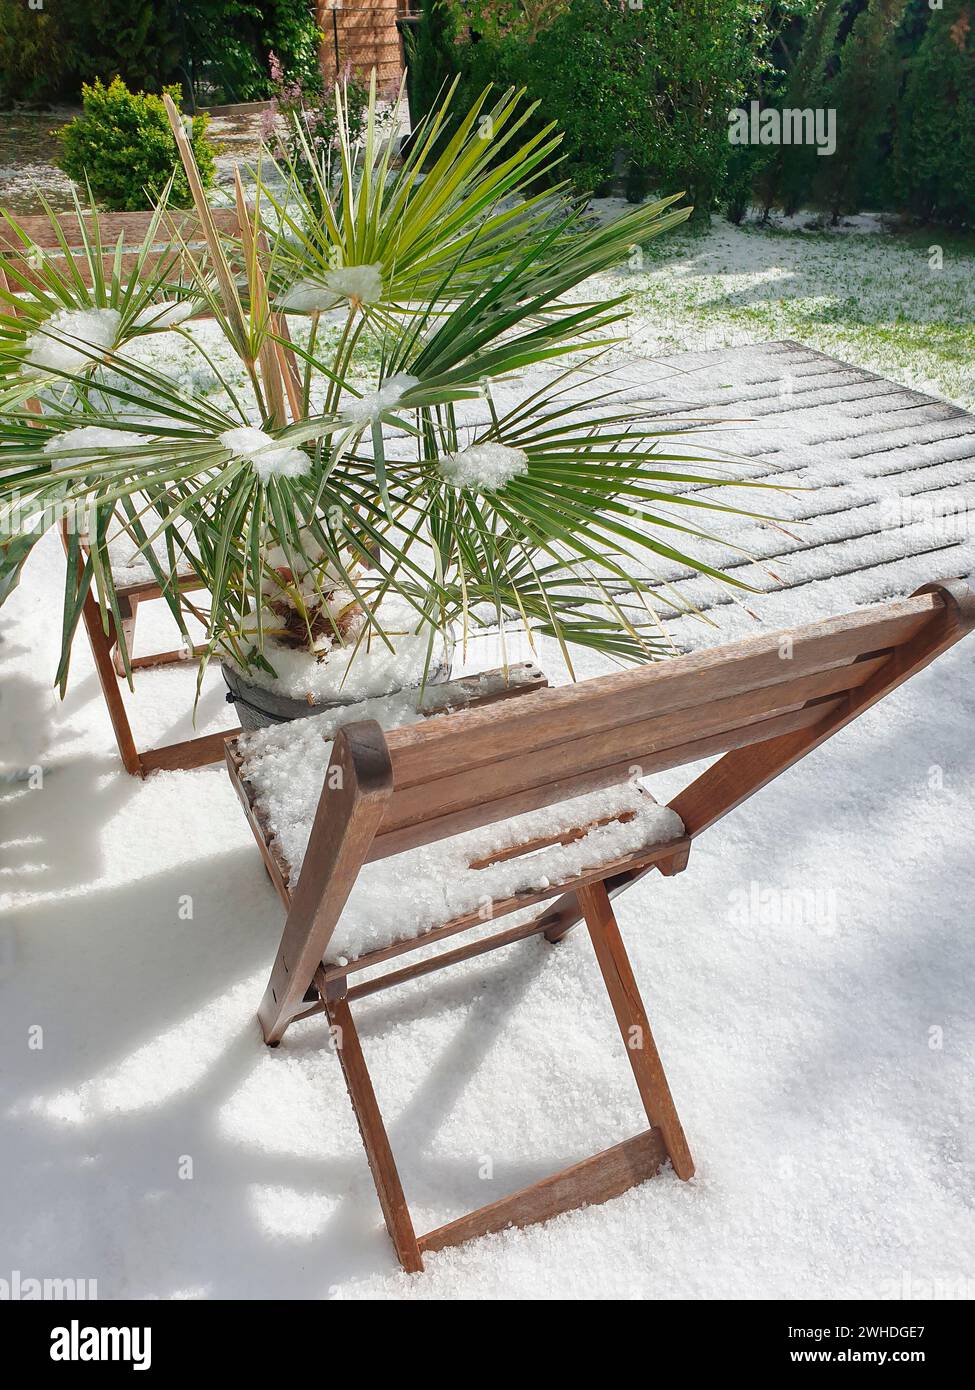 Vista dall'esterno sulla terrazza con mobili da giardino e piante verdi al fenomeno meteorologico della neve a maggio a Berlino a causa dei cambiamenti climatici Foto Stock